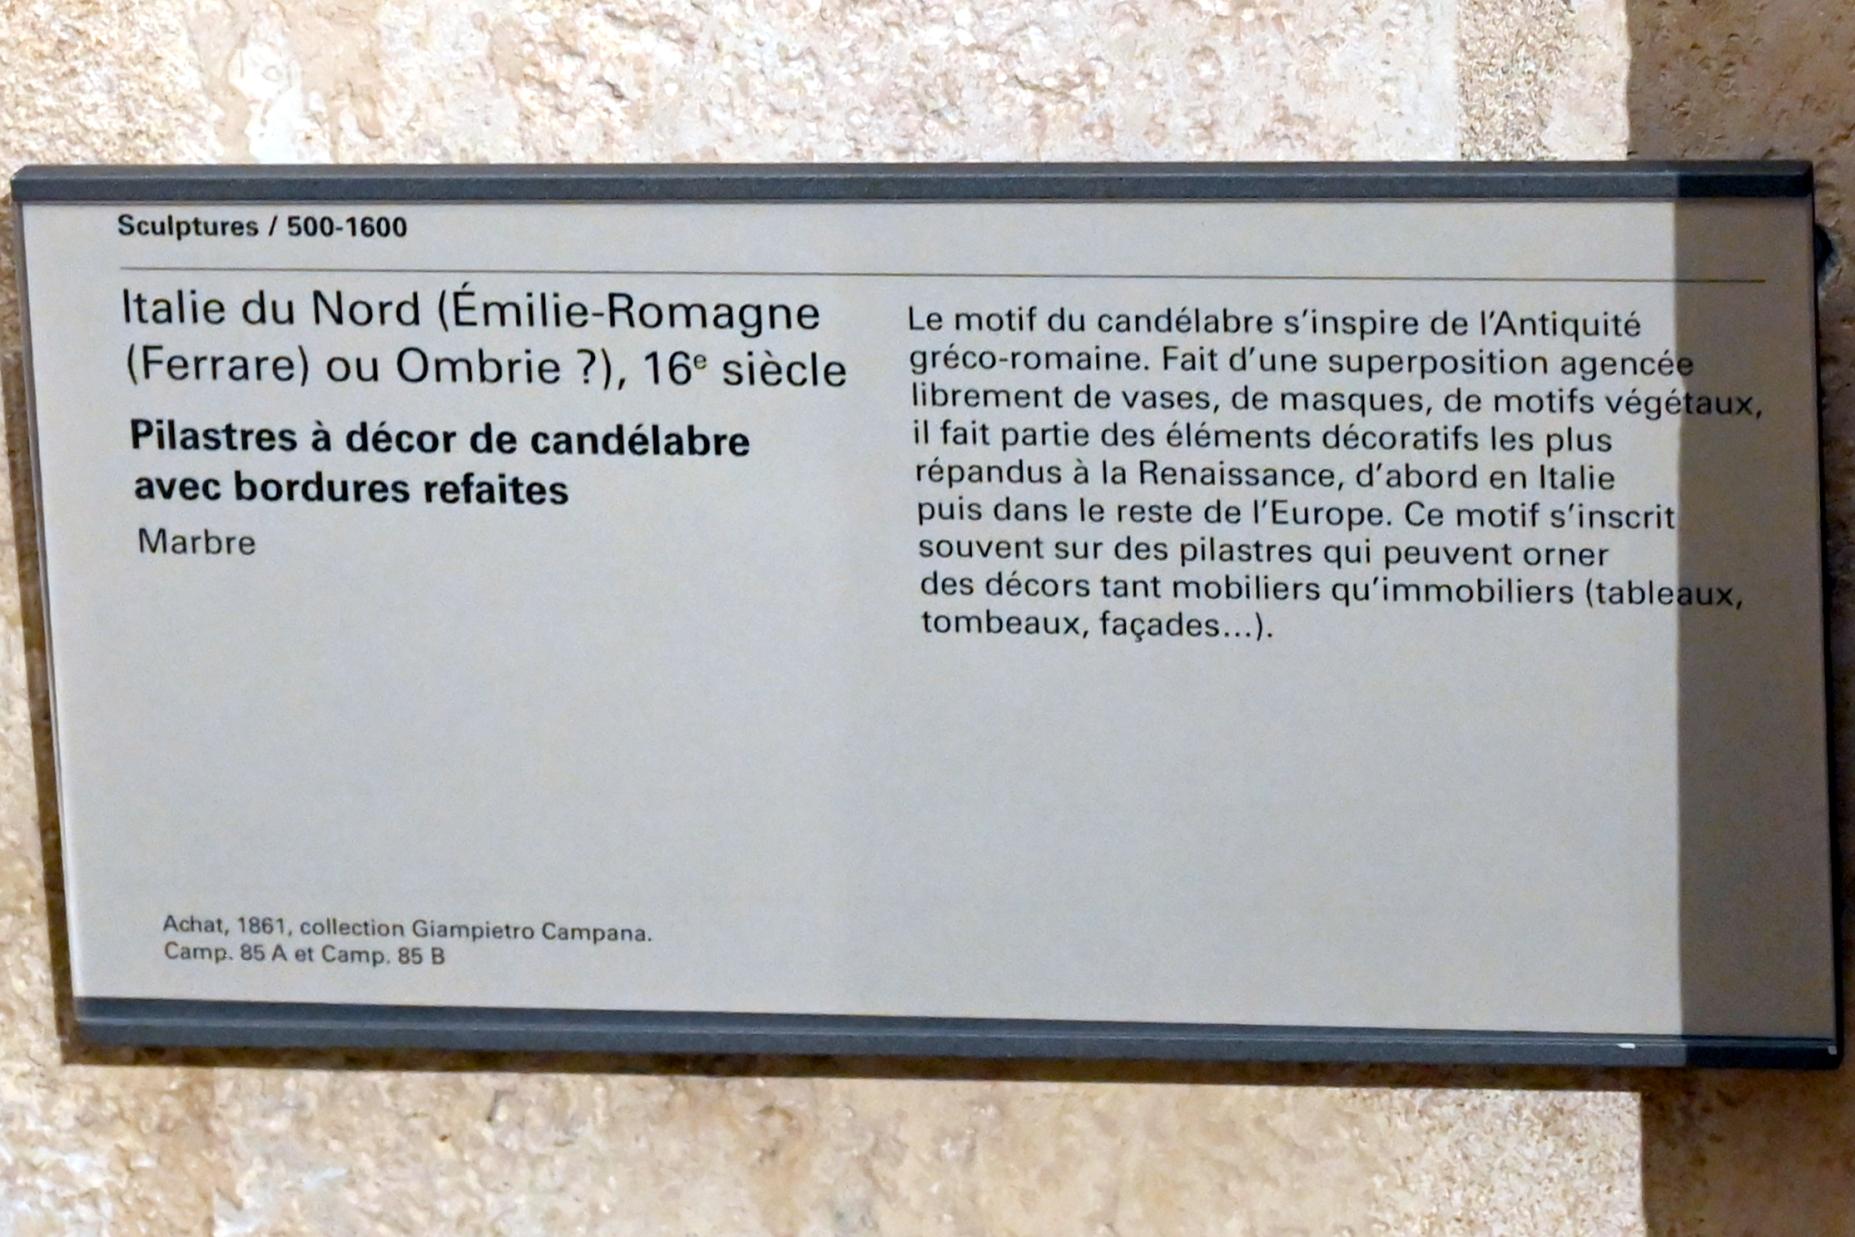 Pilaster mit Kandelaberdekoration, Paris, Musée du Louvre, Saal 160, 16. Jhd., Bild 2/2